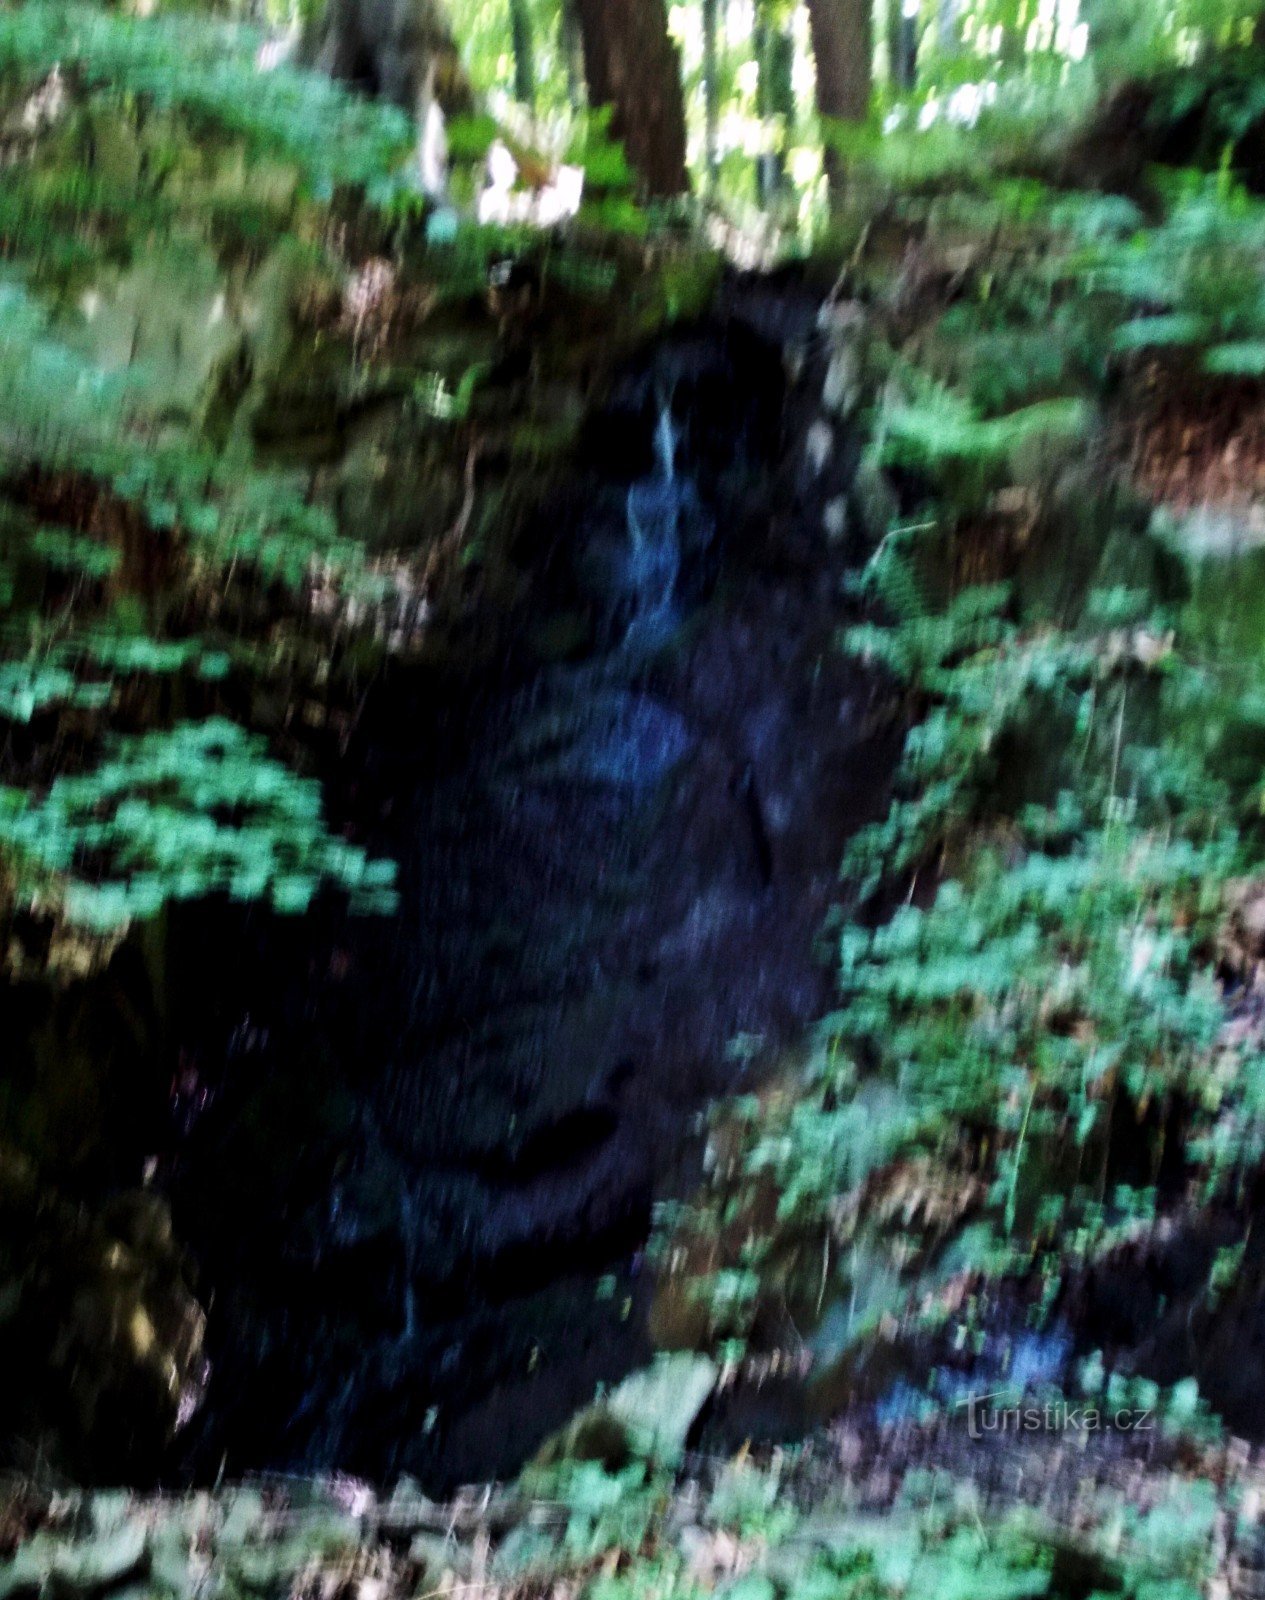 Izvorski vodopad iznad naselja Rybáre u blizini mjesta Drahotuše